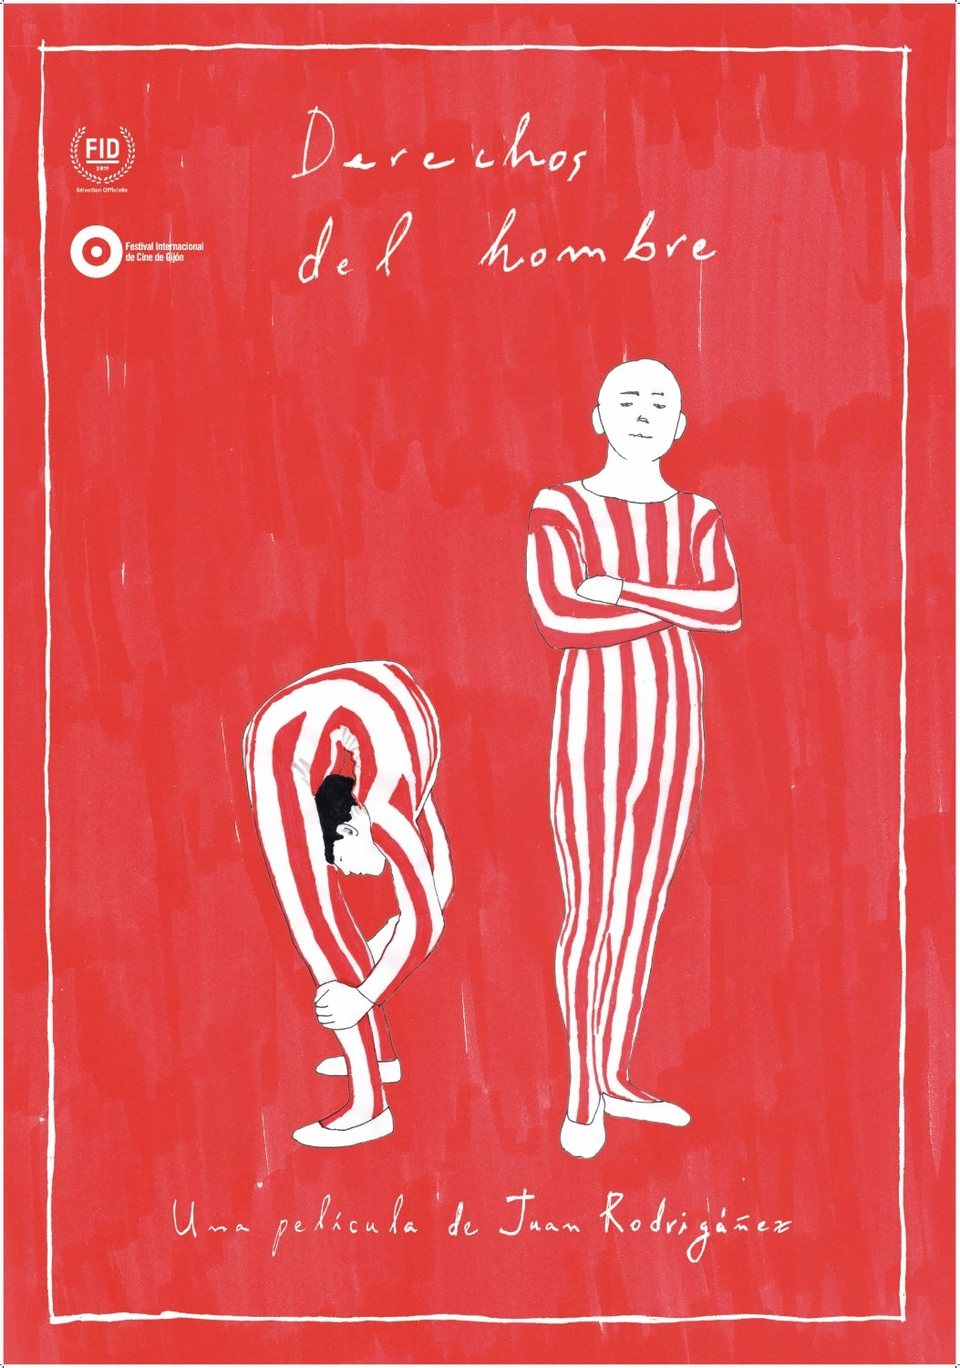 Cartel de Derechos del hombre - Póster español 'Derechos del hombre'